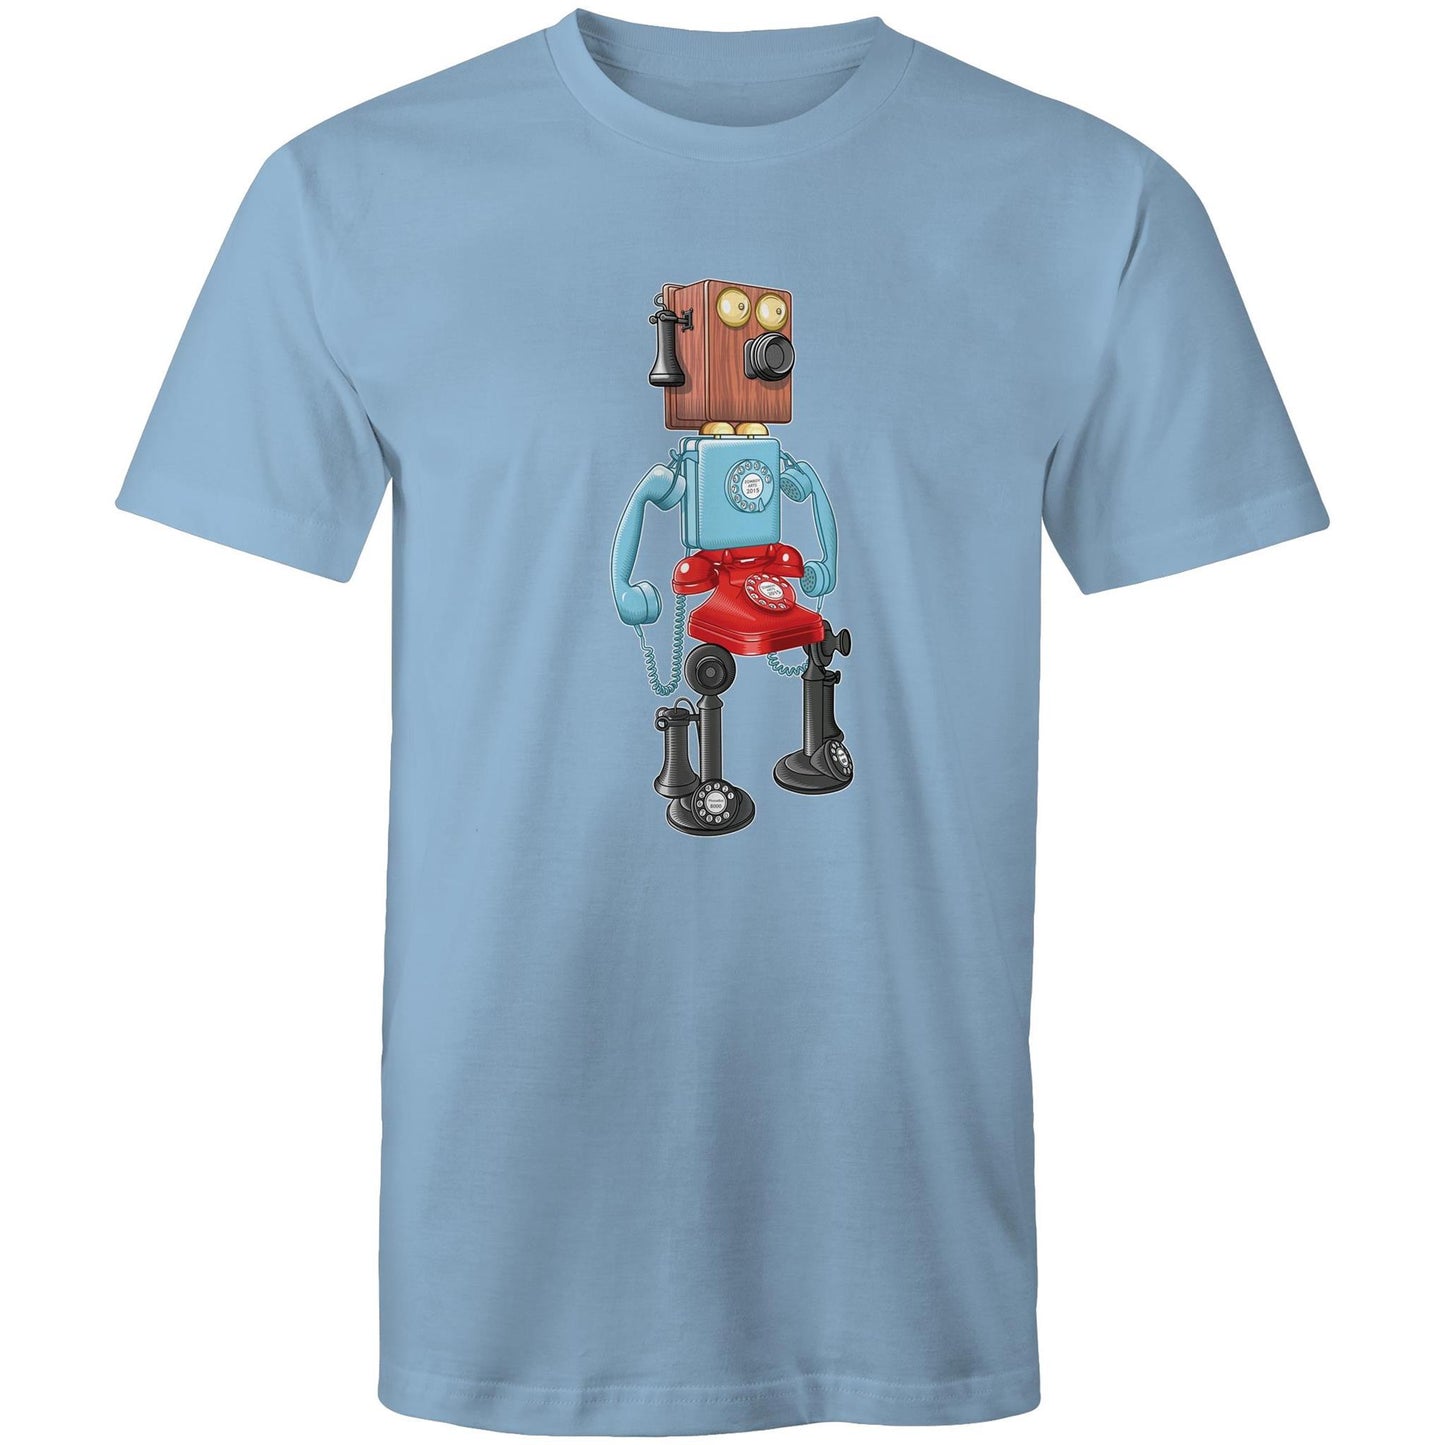 PhoneBot 8000 - Men's T-Shirt